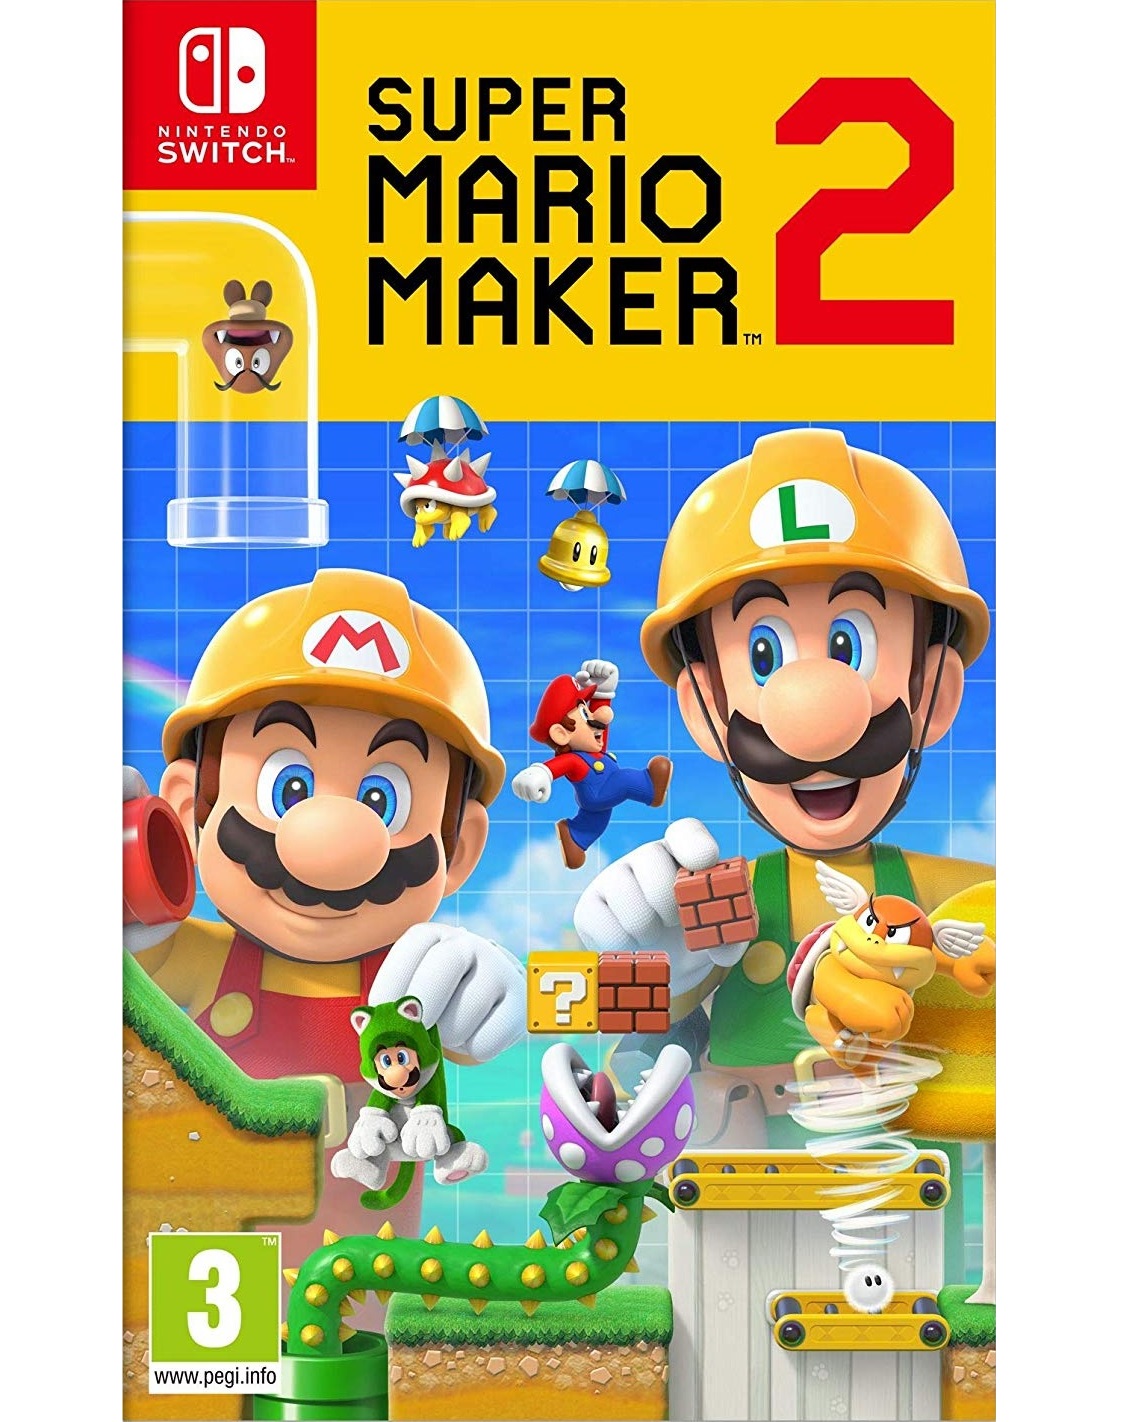 Super Mario Maker 2 - Switch